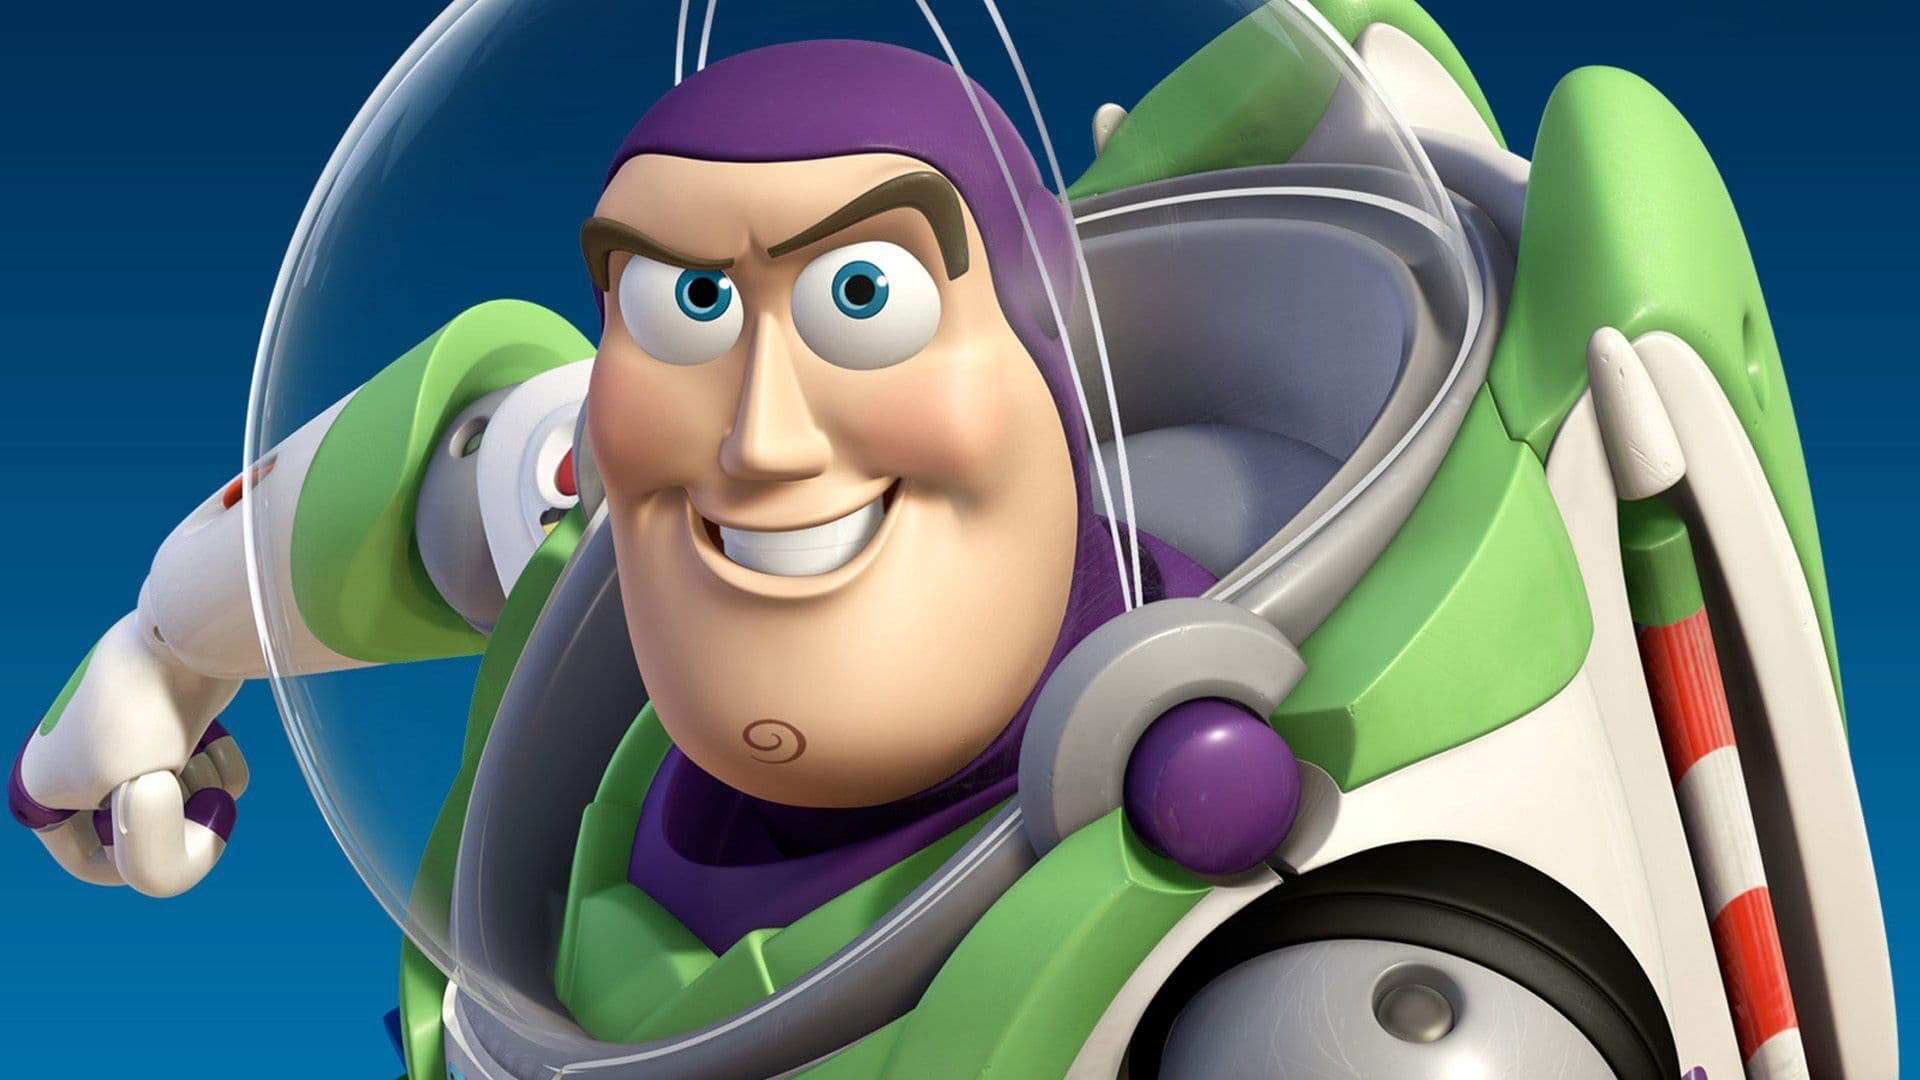 Buzz Lightyear Avaruusranger - Seikkailu alkaa